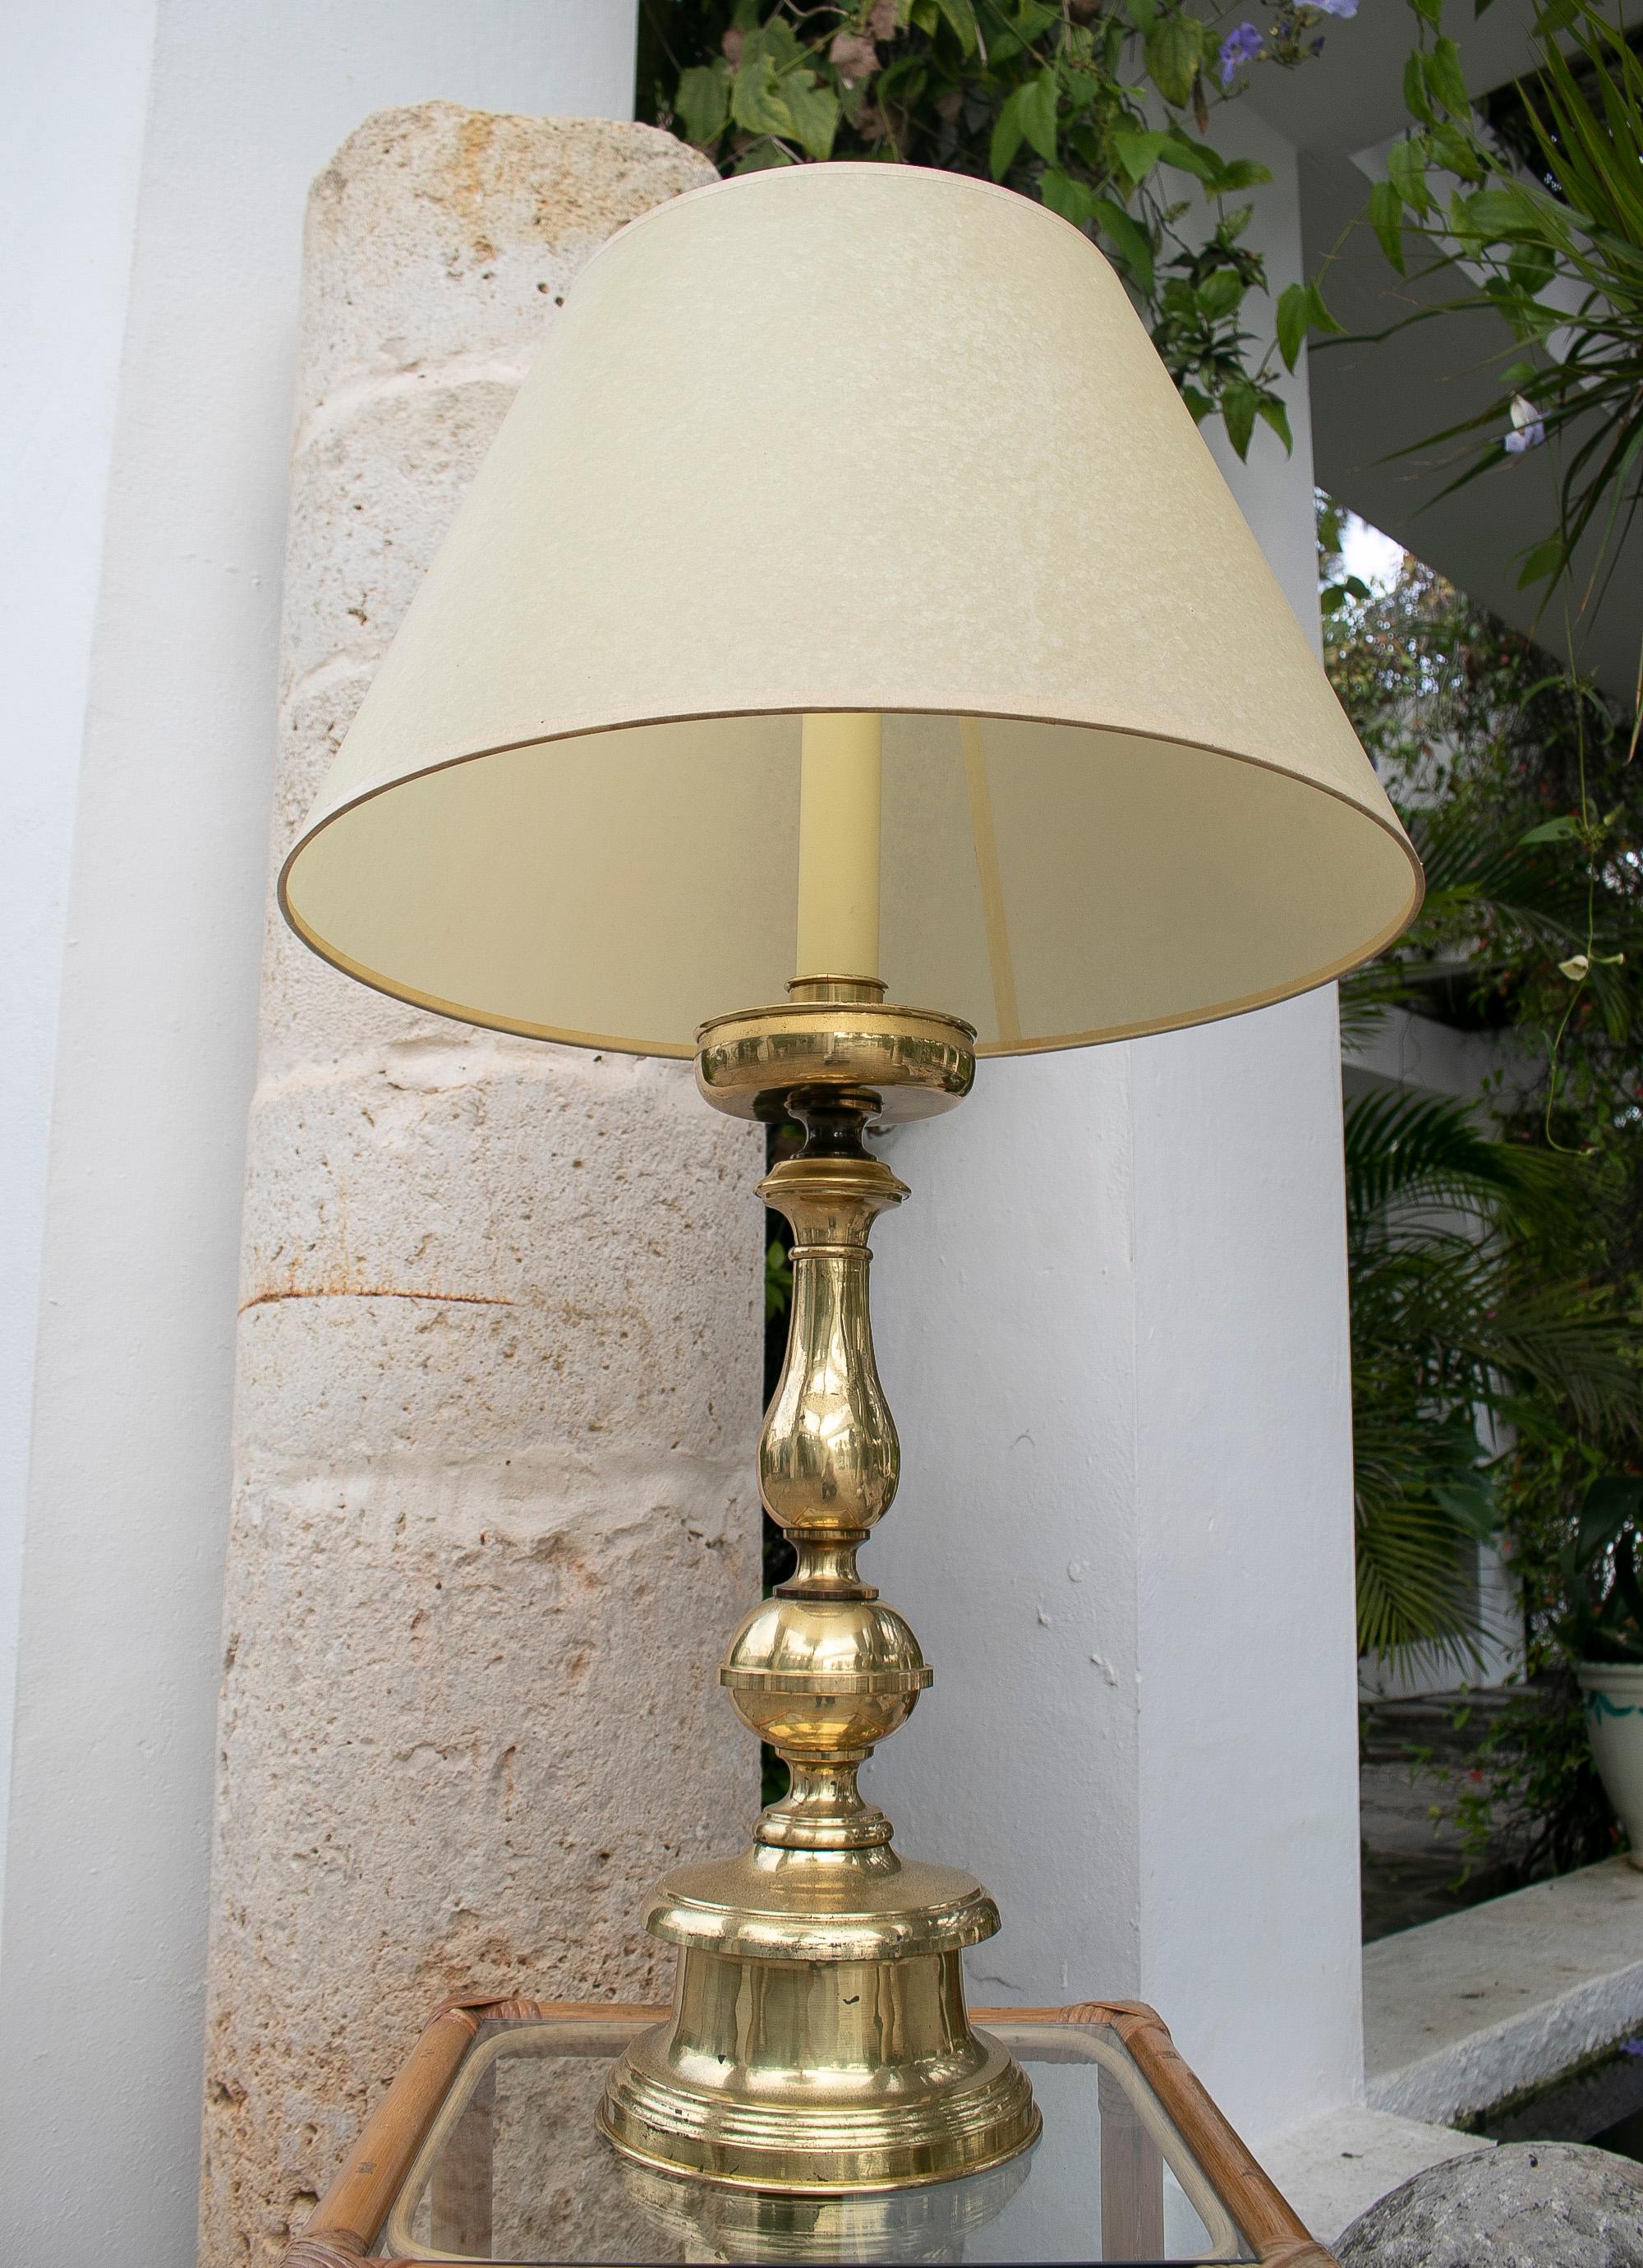 1970's Spanische Bronze Kerzenhalter Tischlampe

Maße mit Lampenschirm: 90x54cm
Der Lampenschirm ist nicht im Preis enthalten.